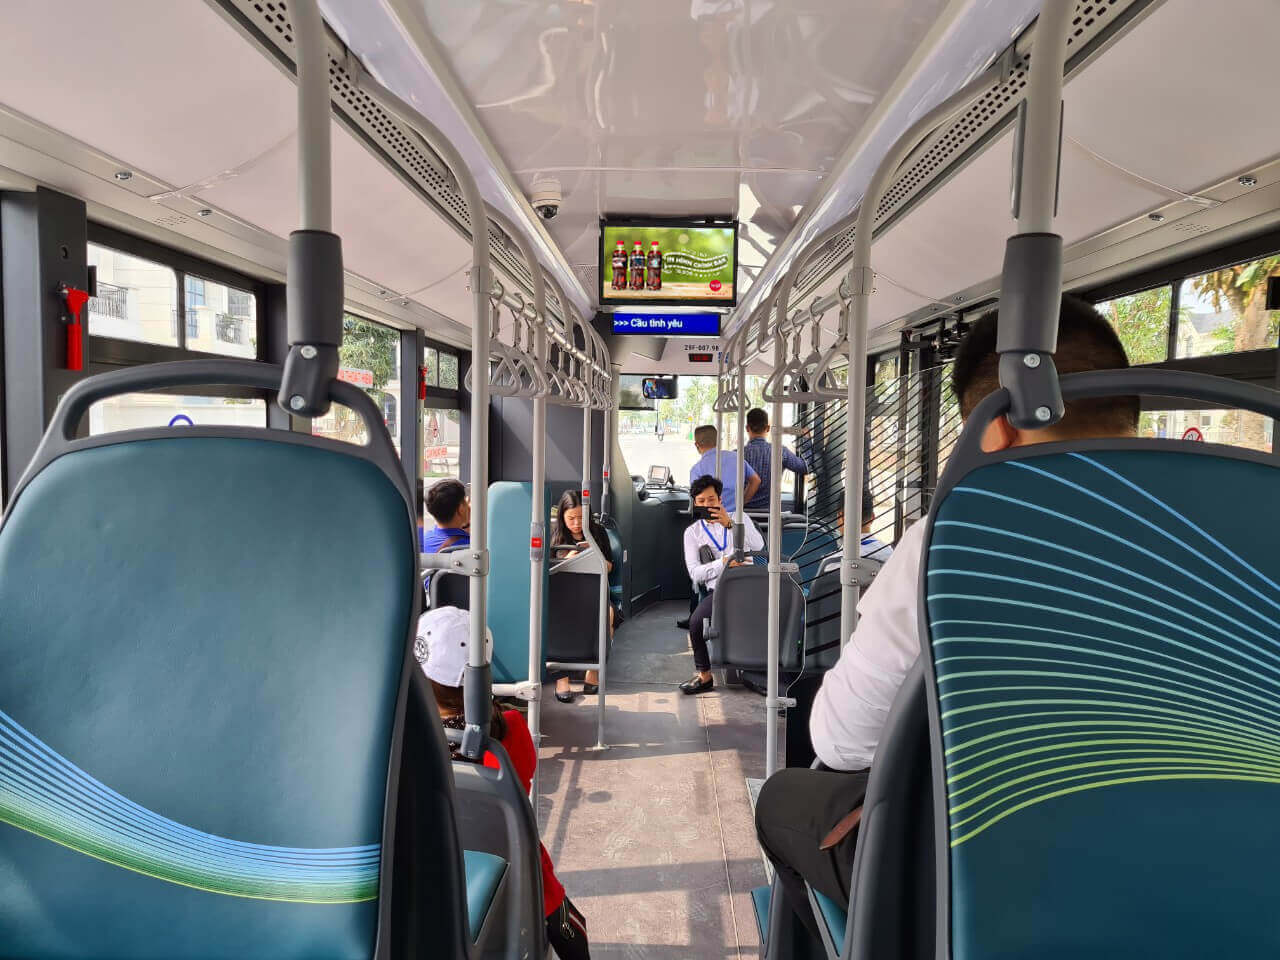 Giới thiệu về quảng cáo màn hình LCD bên trong xe buýt